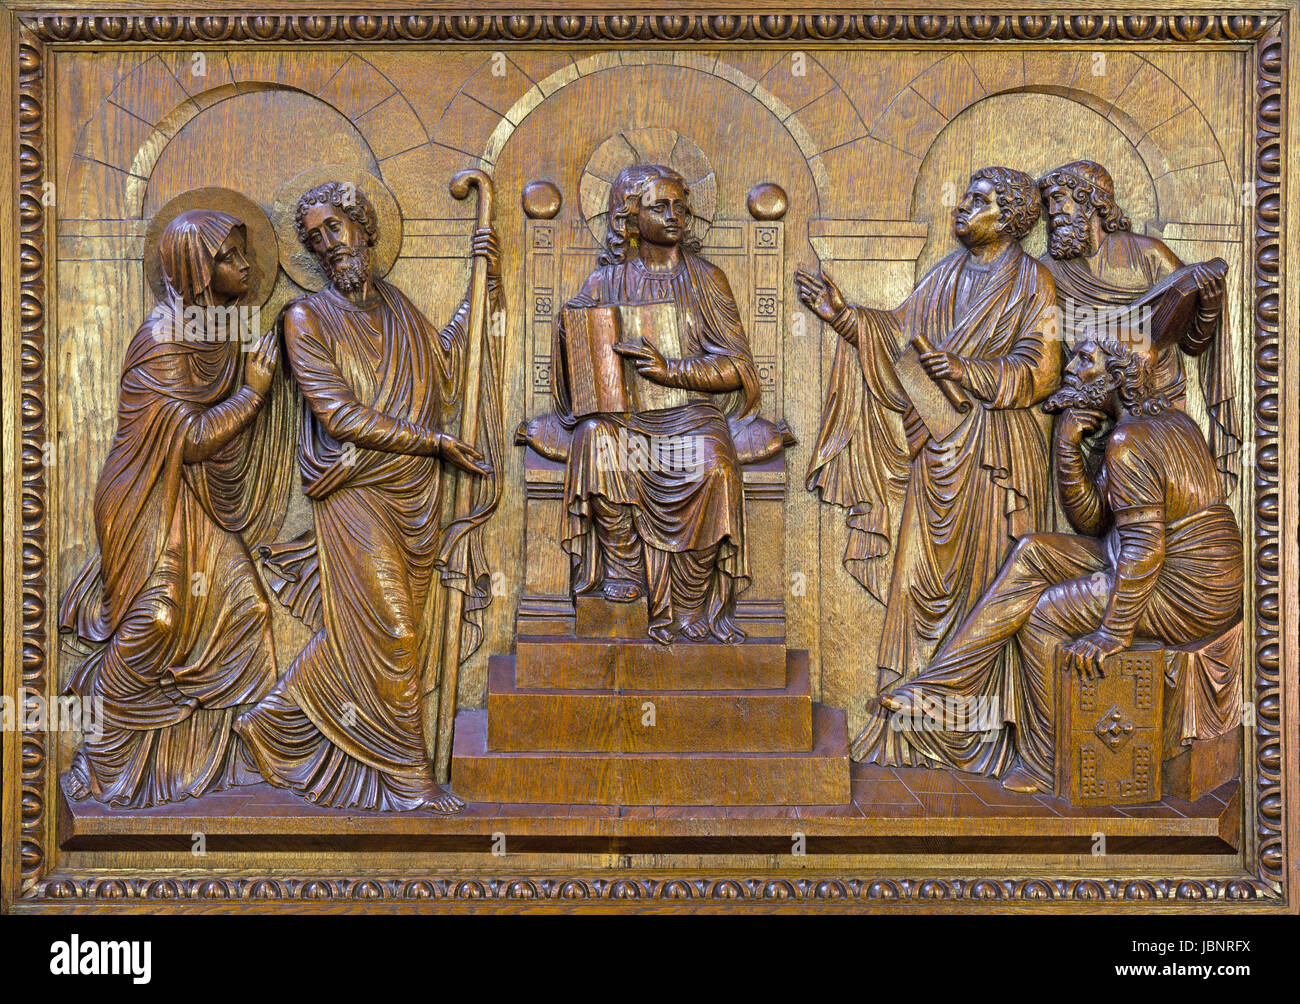 Berlino, Germania - Febbraio 15, 2017: Il rilievo scolpite dodici vecchi Gesù nel tempio di San Giovanni Battista basilica (Johannes Basilika) da Anton Foto Stock